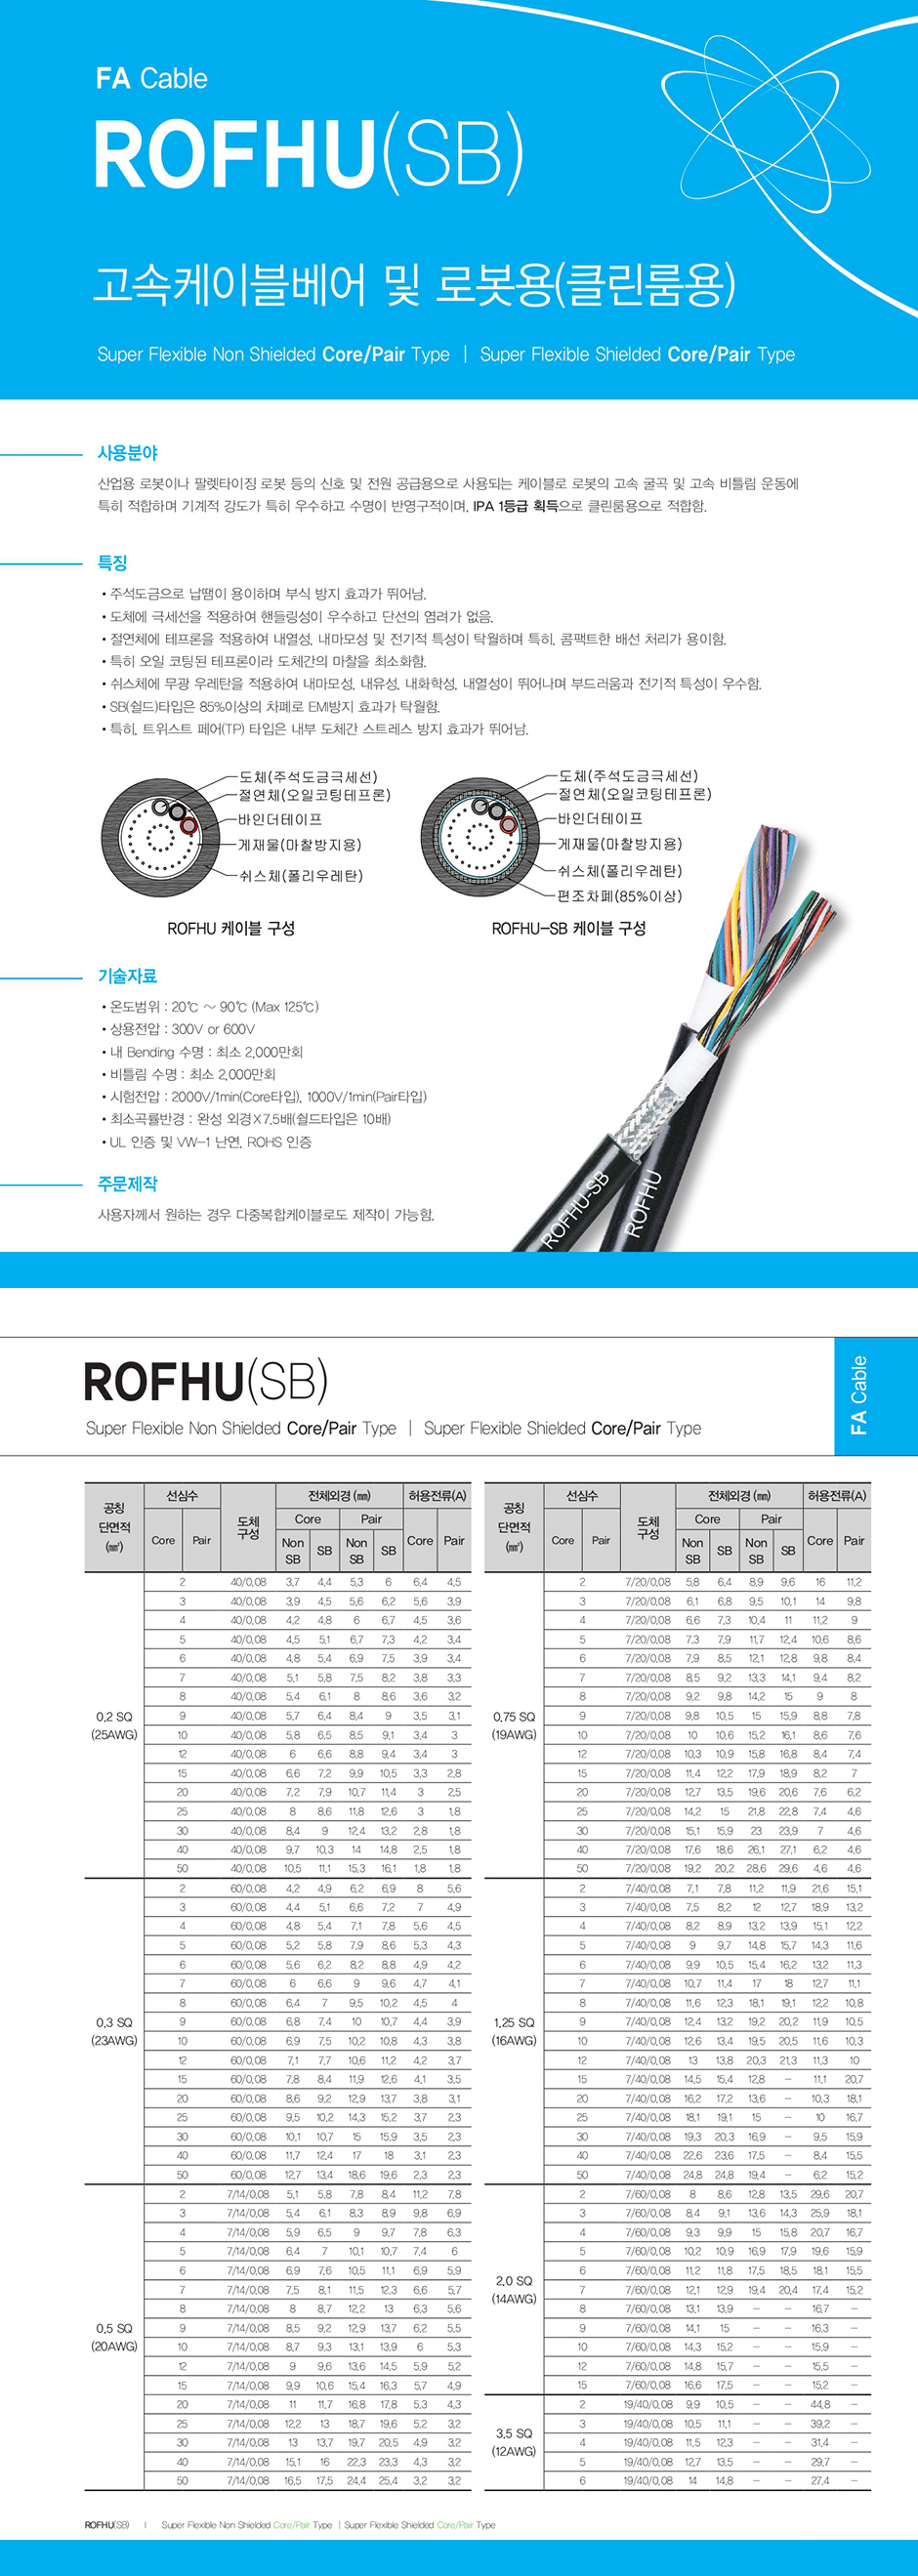 FA Cable : ROFHU(SB)